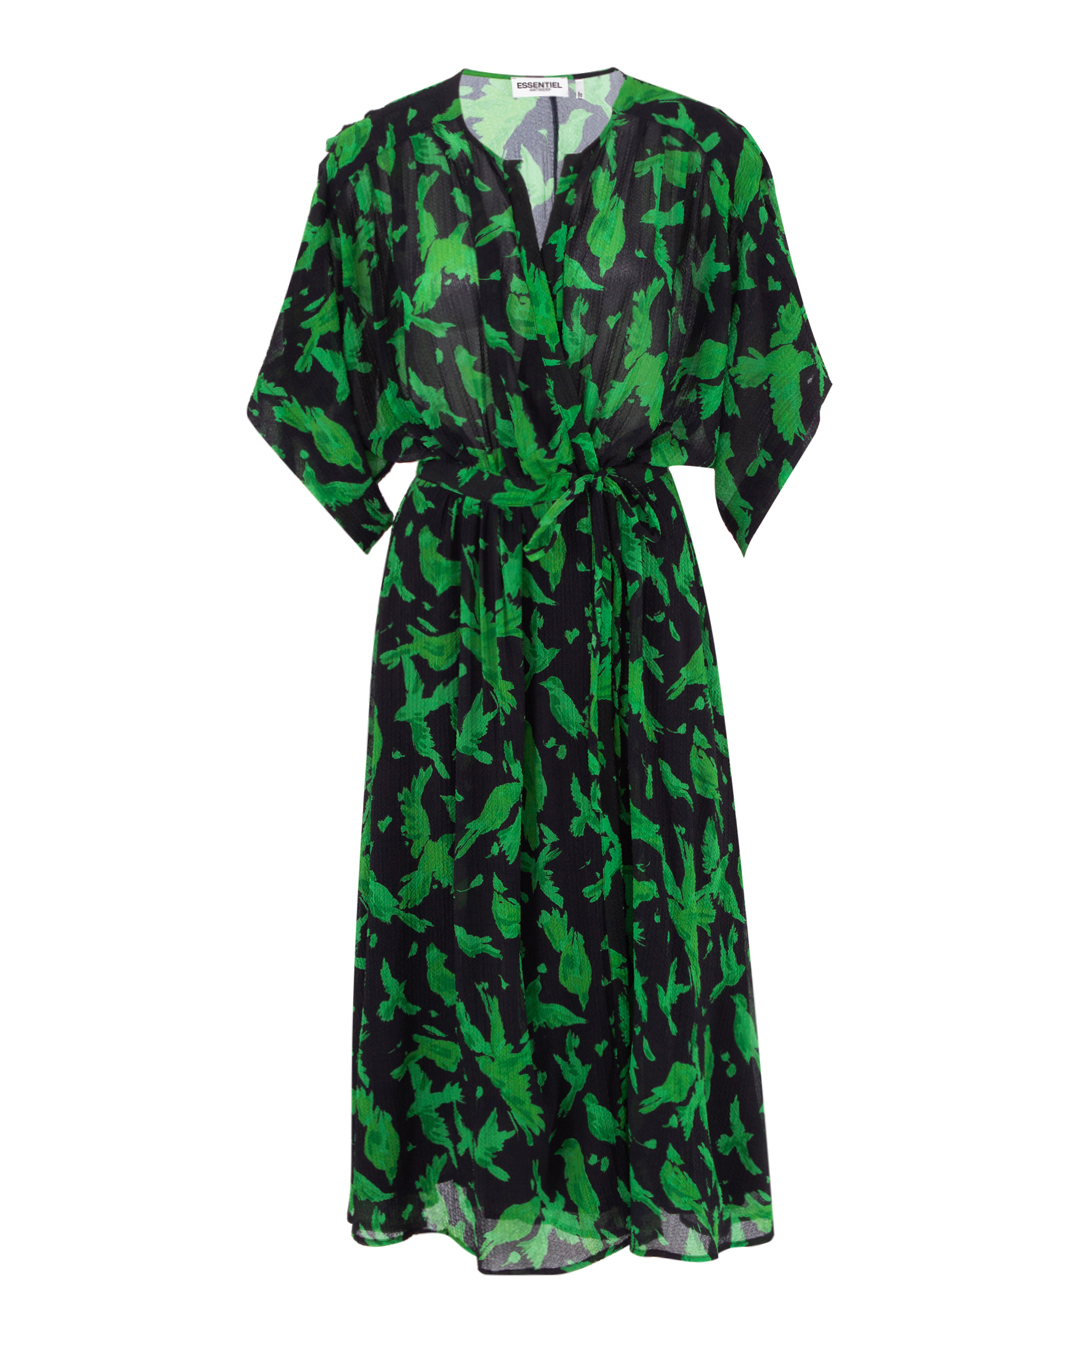 платье Essentiel EVRAY черный+зеленый m, размер m, цвет черный+зеленый EVRAY черный+зеленый m - фото 1